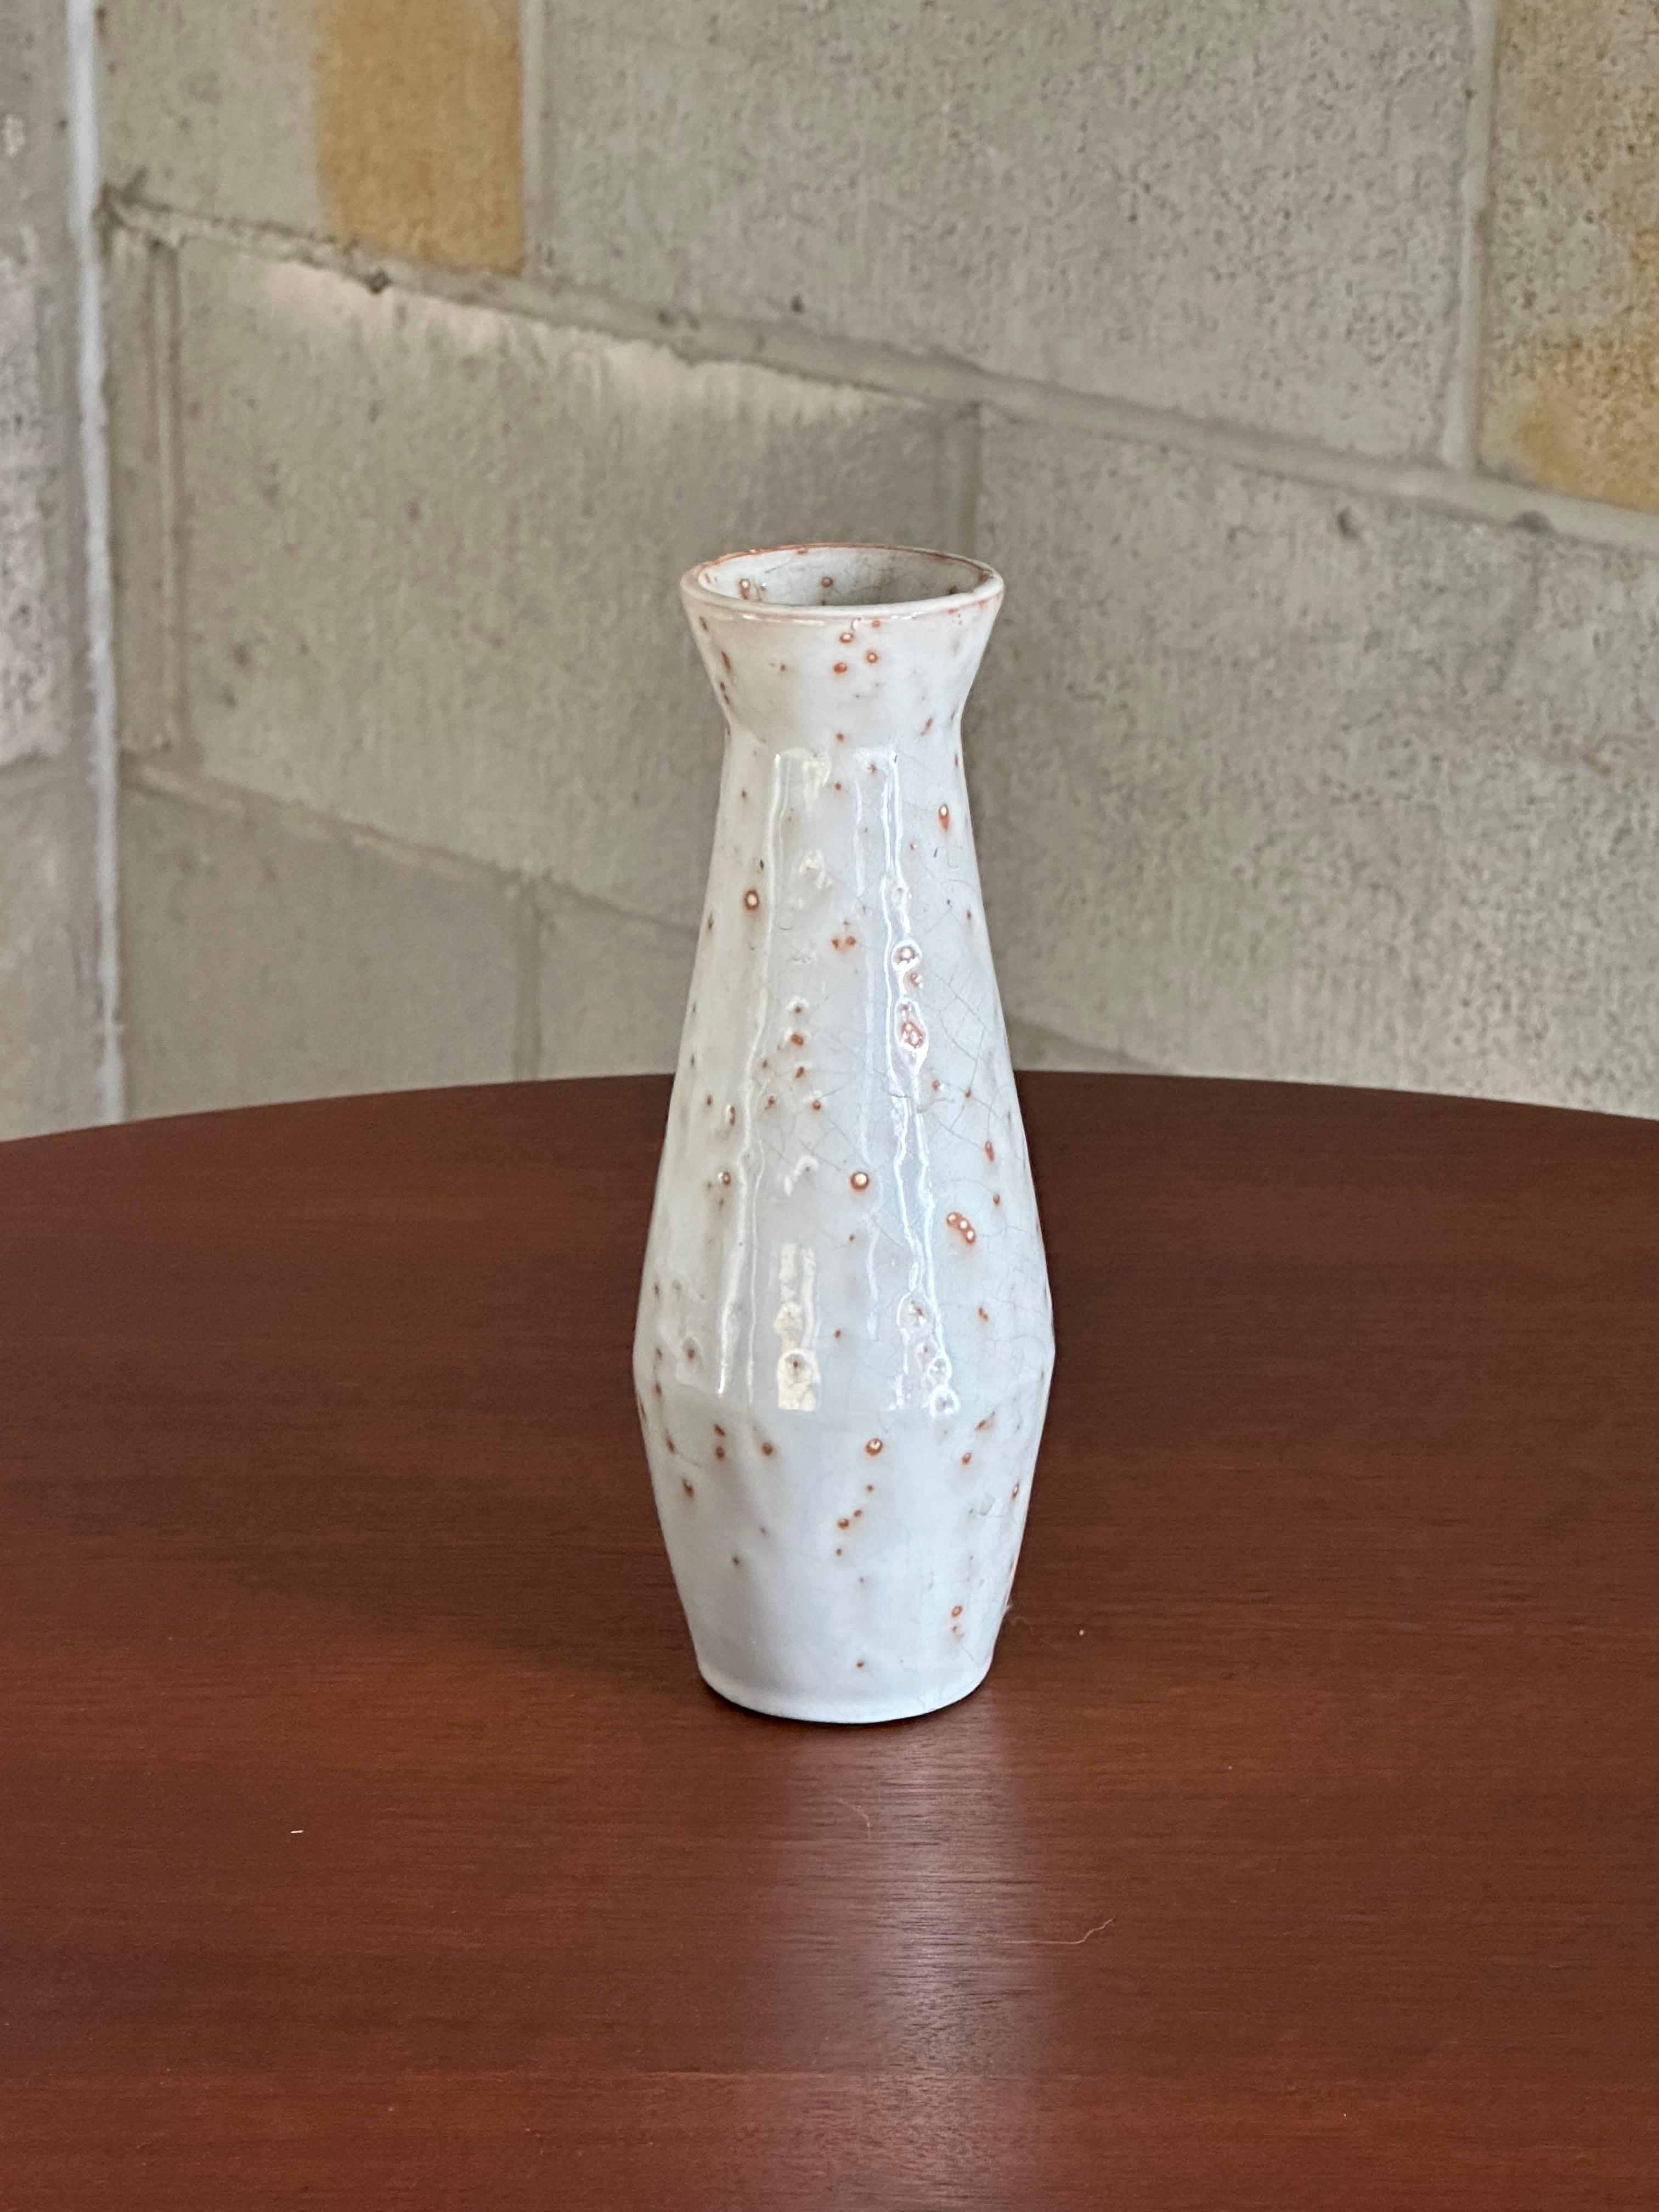 Vase intemporel conçu par Jerk Werkmäster et produit par Nittsjö. Whiting présente un corps grisâtre blanc cassé avec des taches de couleur rouille. Il est tout aussi pertinent aujourd'hui qu'il l'était à l'époque où il a été réalisé.